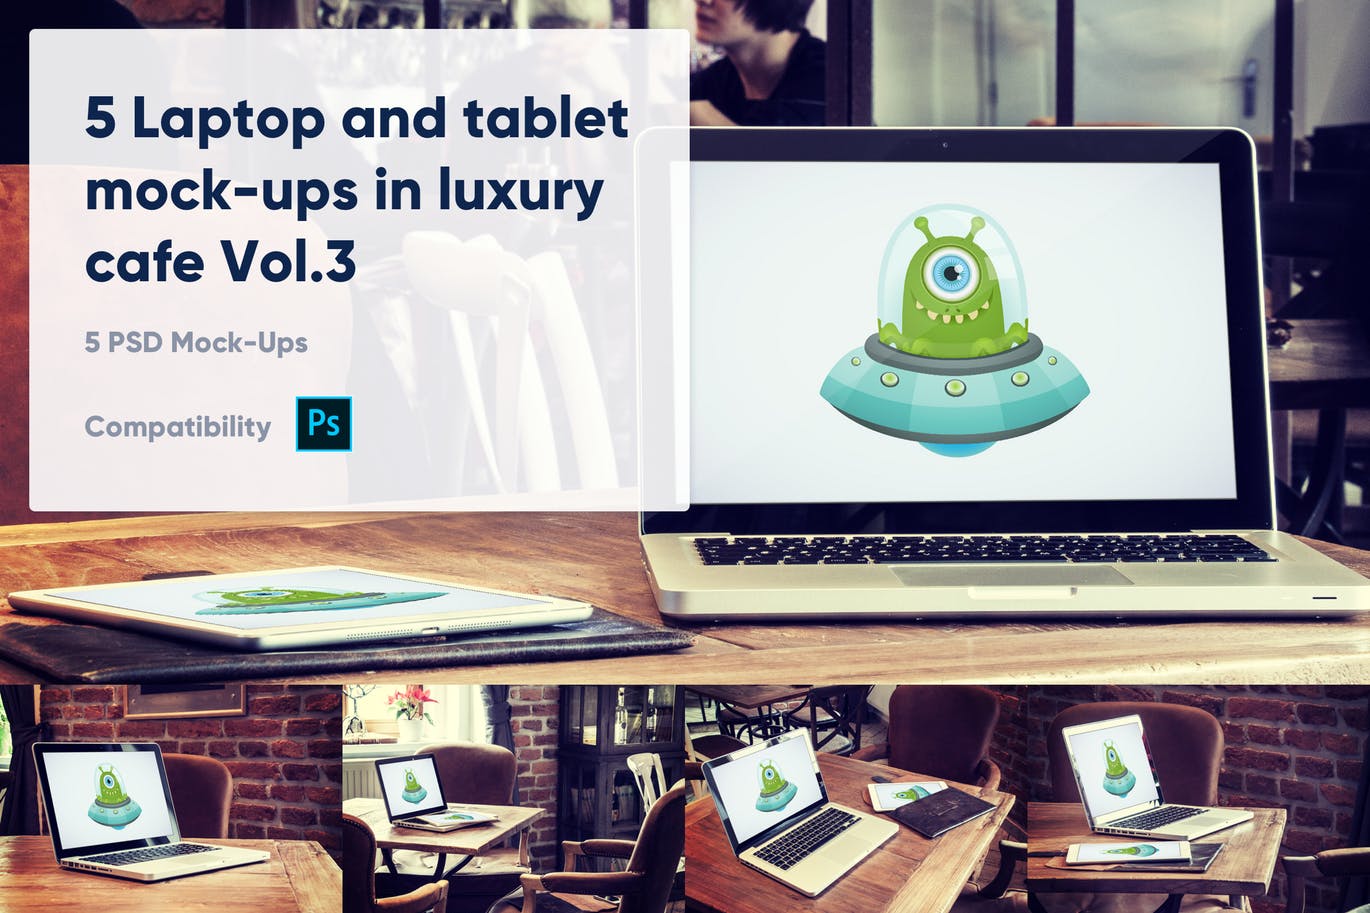 咖啡厅场景笔记本电脑&平板电脑屏幕预览16设计网精选样机v3 5 Laptop and tablet mock-ups in cafe Vol. 3插图